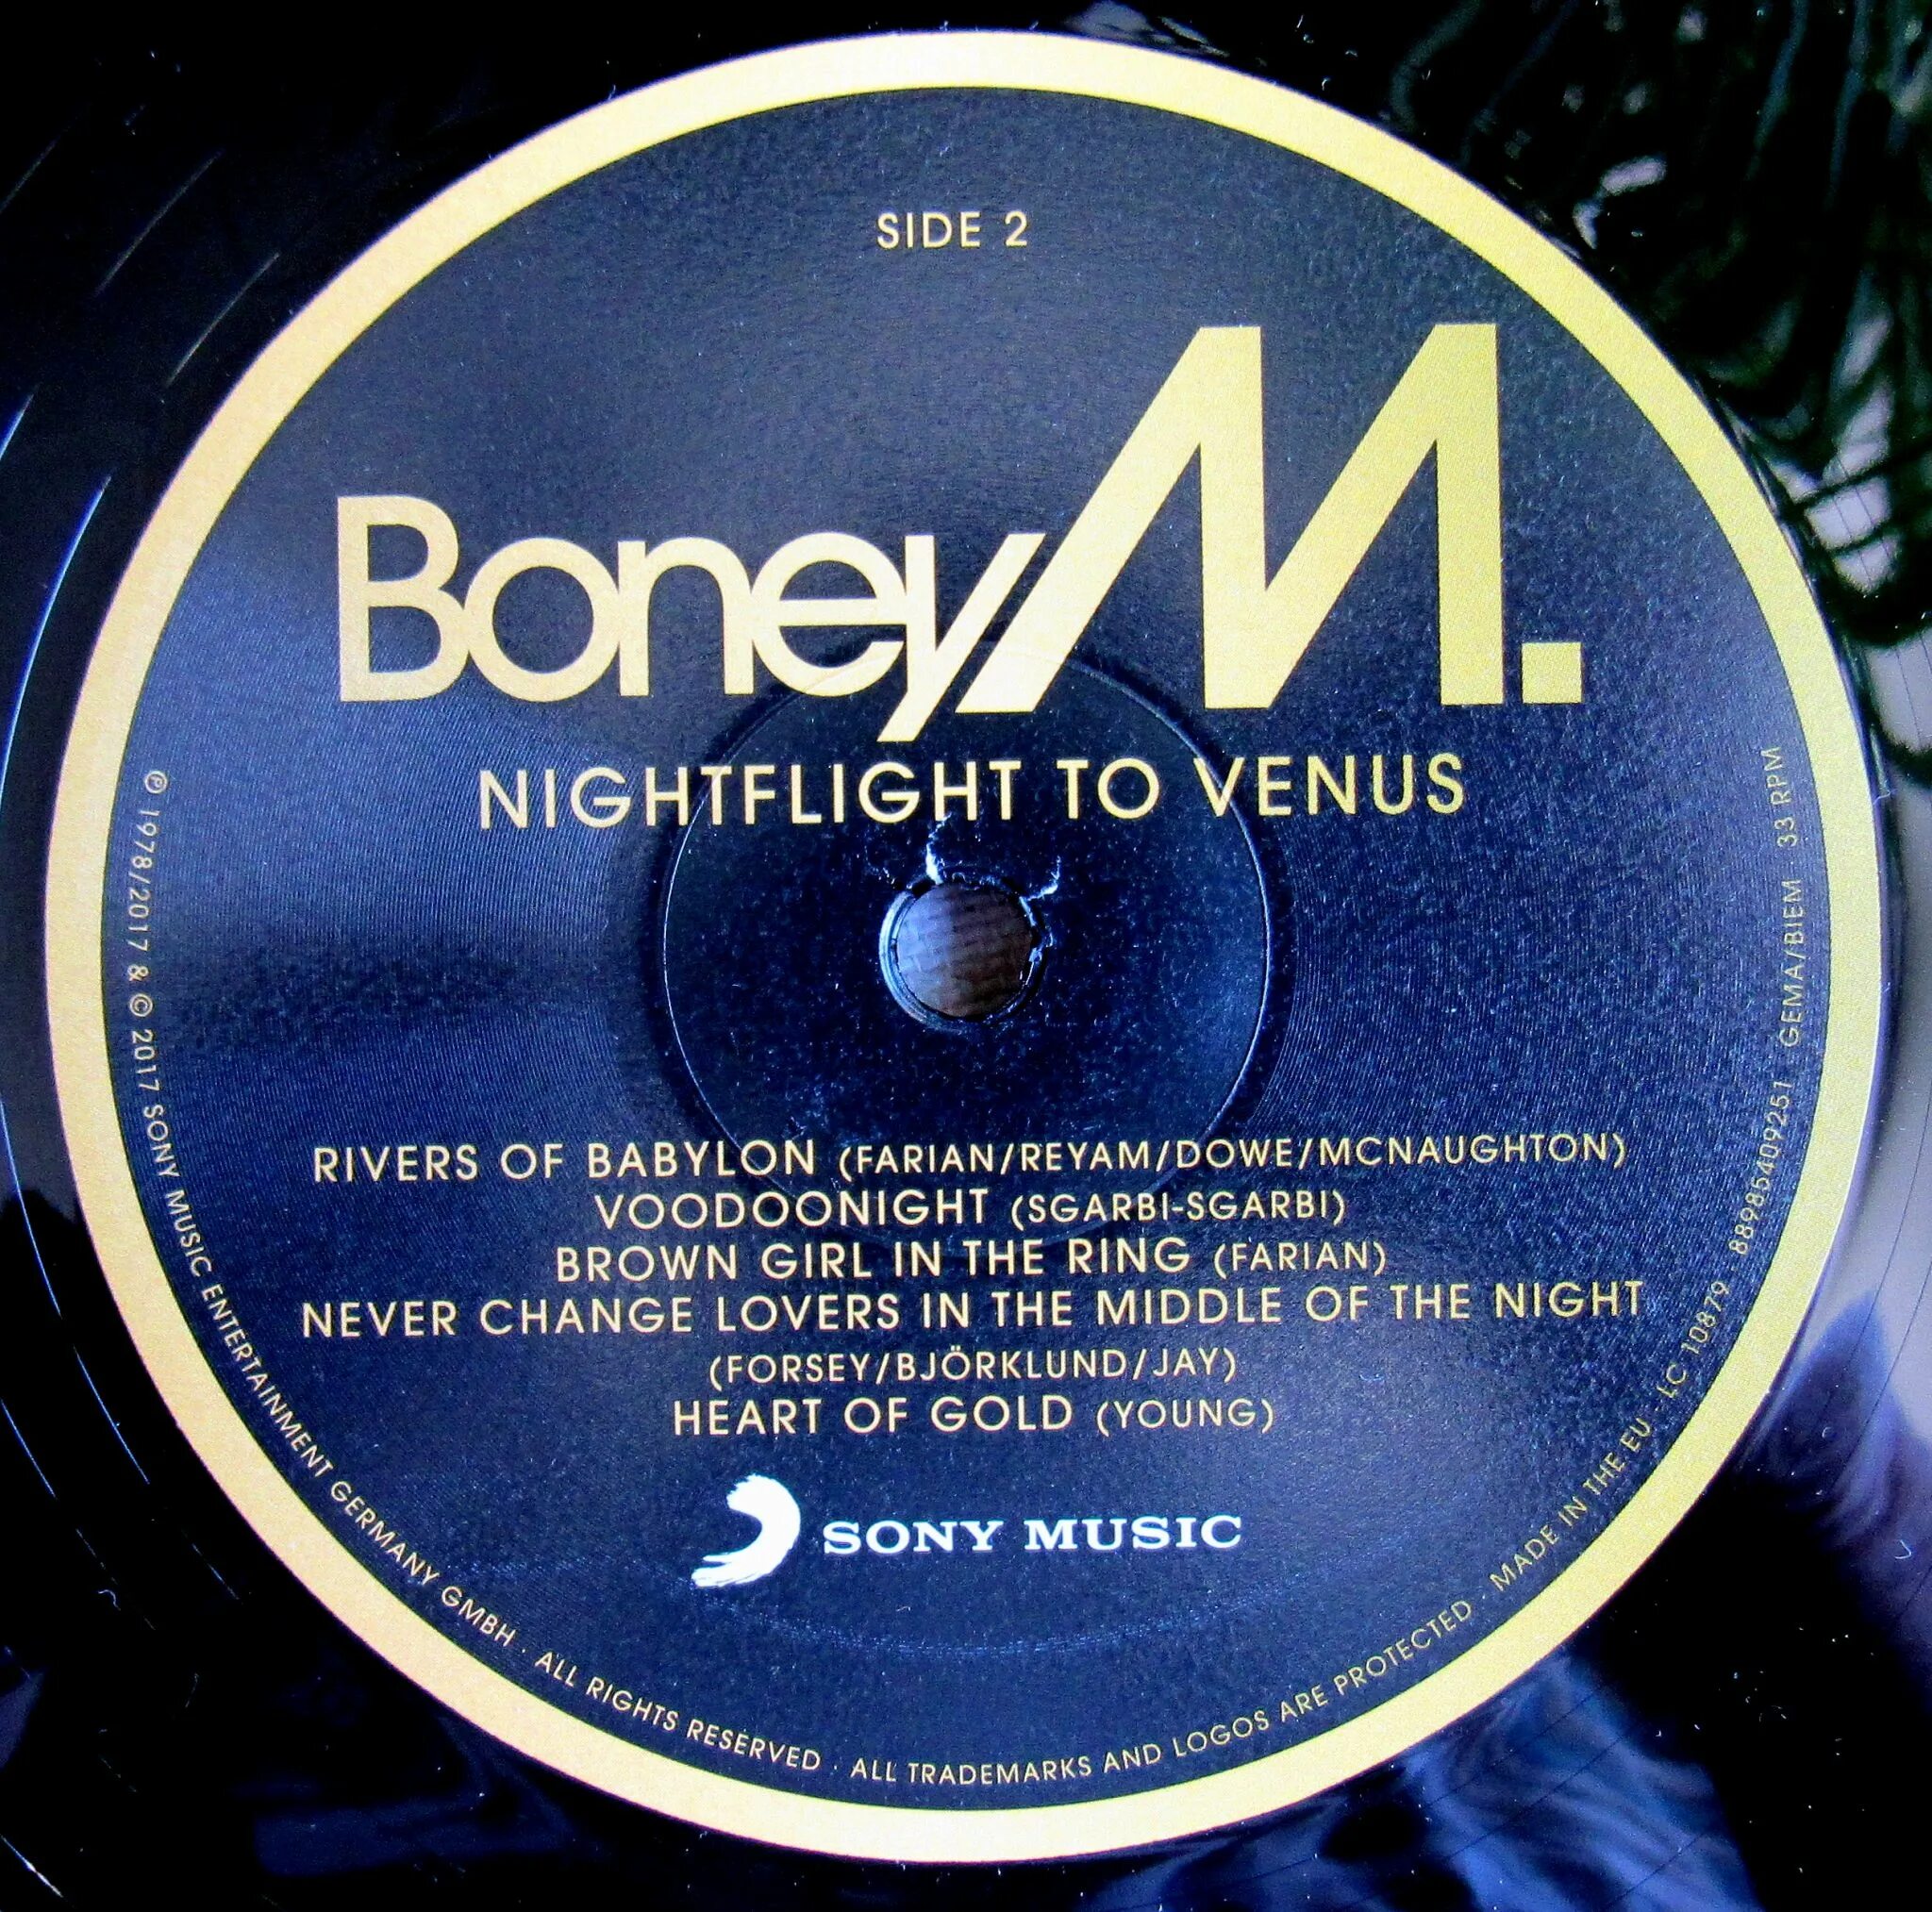 1978 - Nightflight to Venus. Пластинка Boney m Nightflight to Venus. Boney m Nightflight to Venus 1978. 0889854092511, Виниловая пластинка Boney m., Nightflight to Venus (0889854092511). Nightflight to venus boney m